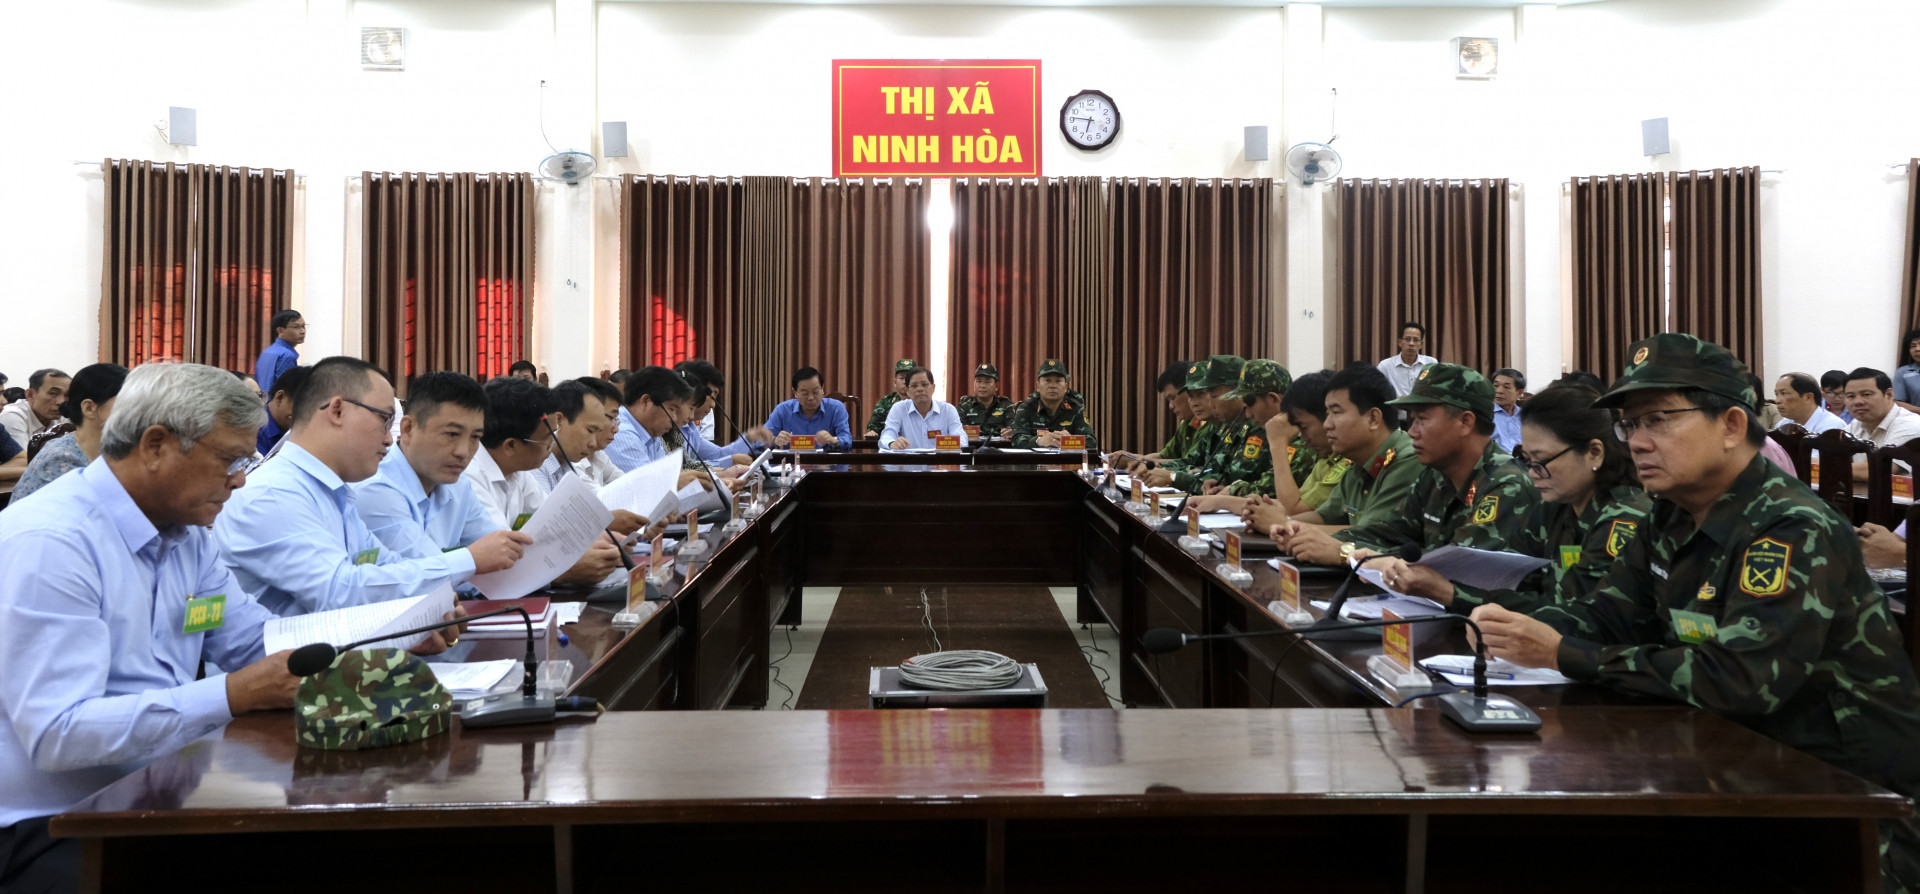 Quang cảnh cuộc họp Ban Chỉ huy Phòng chống thiên tai - Tìm kiếm cứu nạn thị xã Ninh Hòa mở rộng trong phần vận hành cơ chế